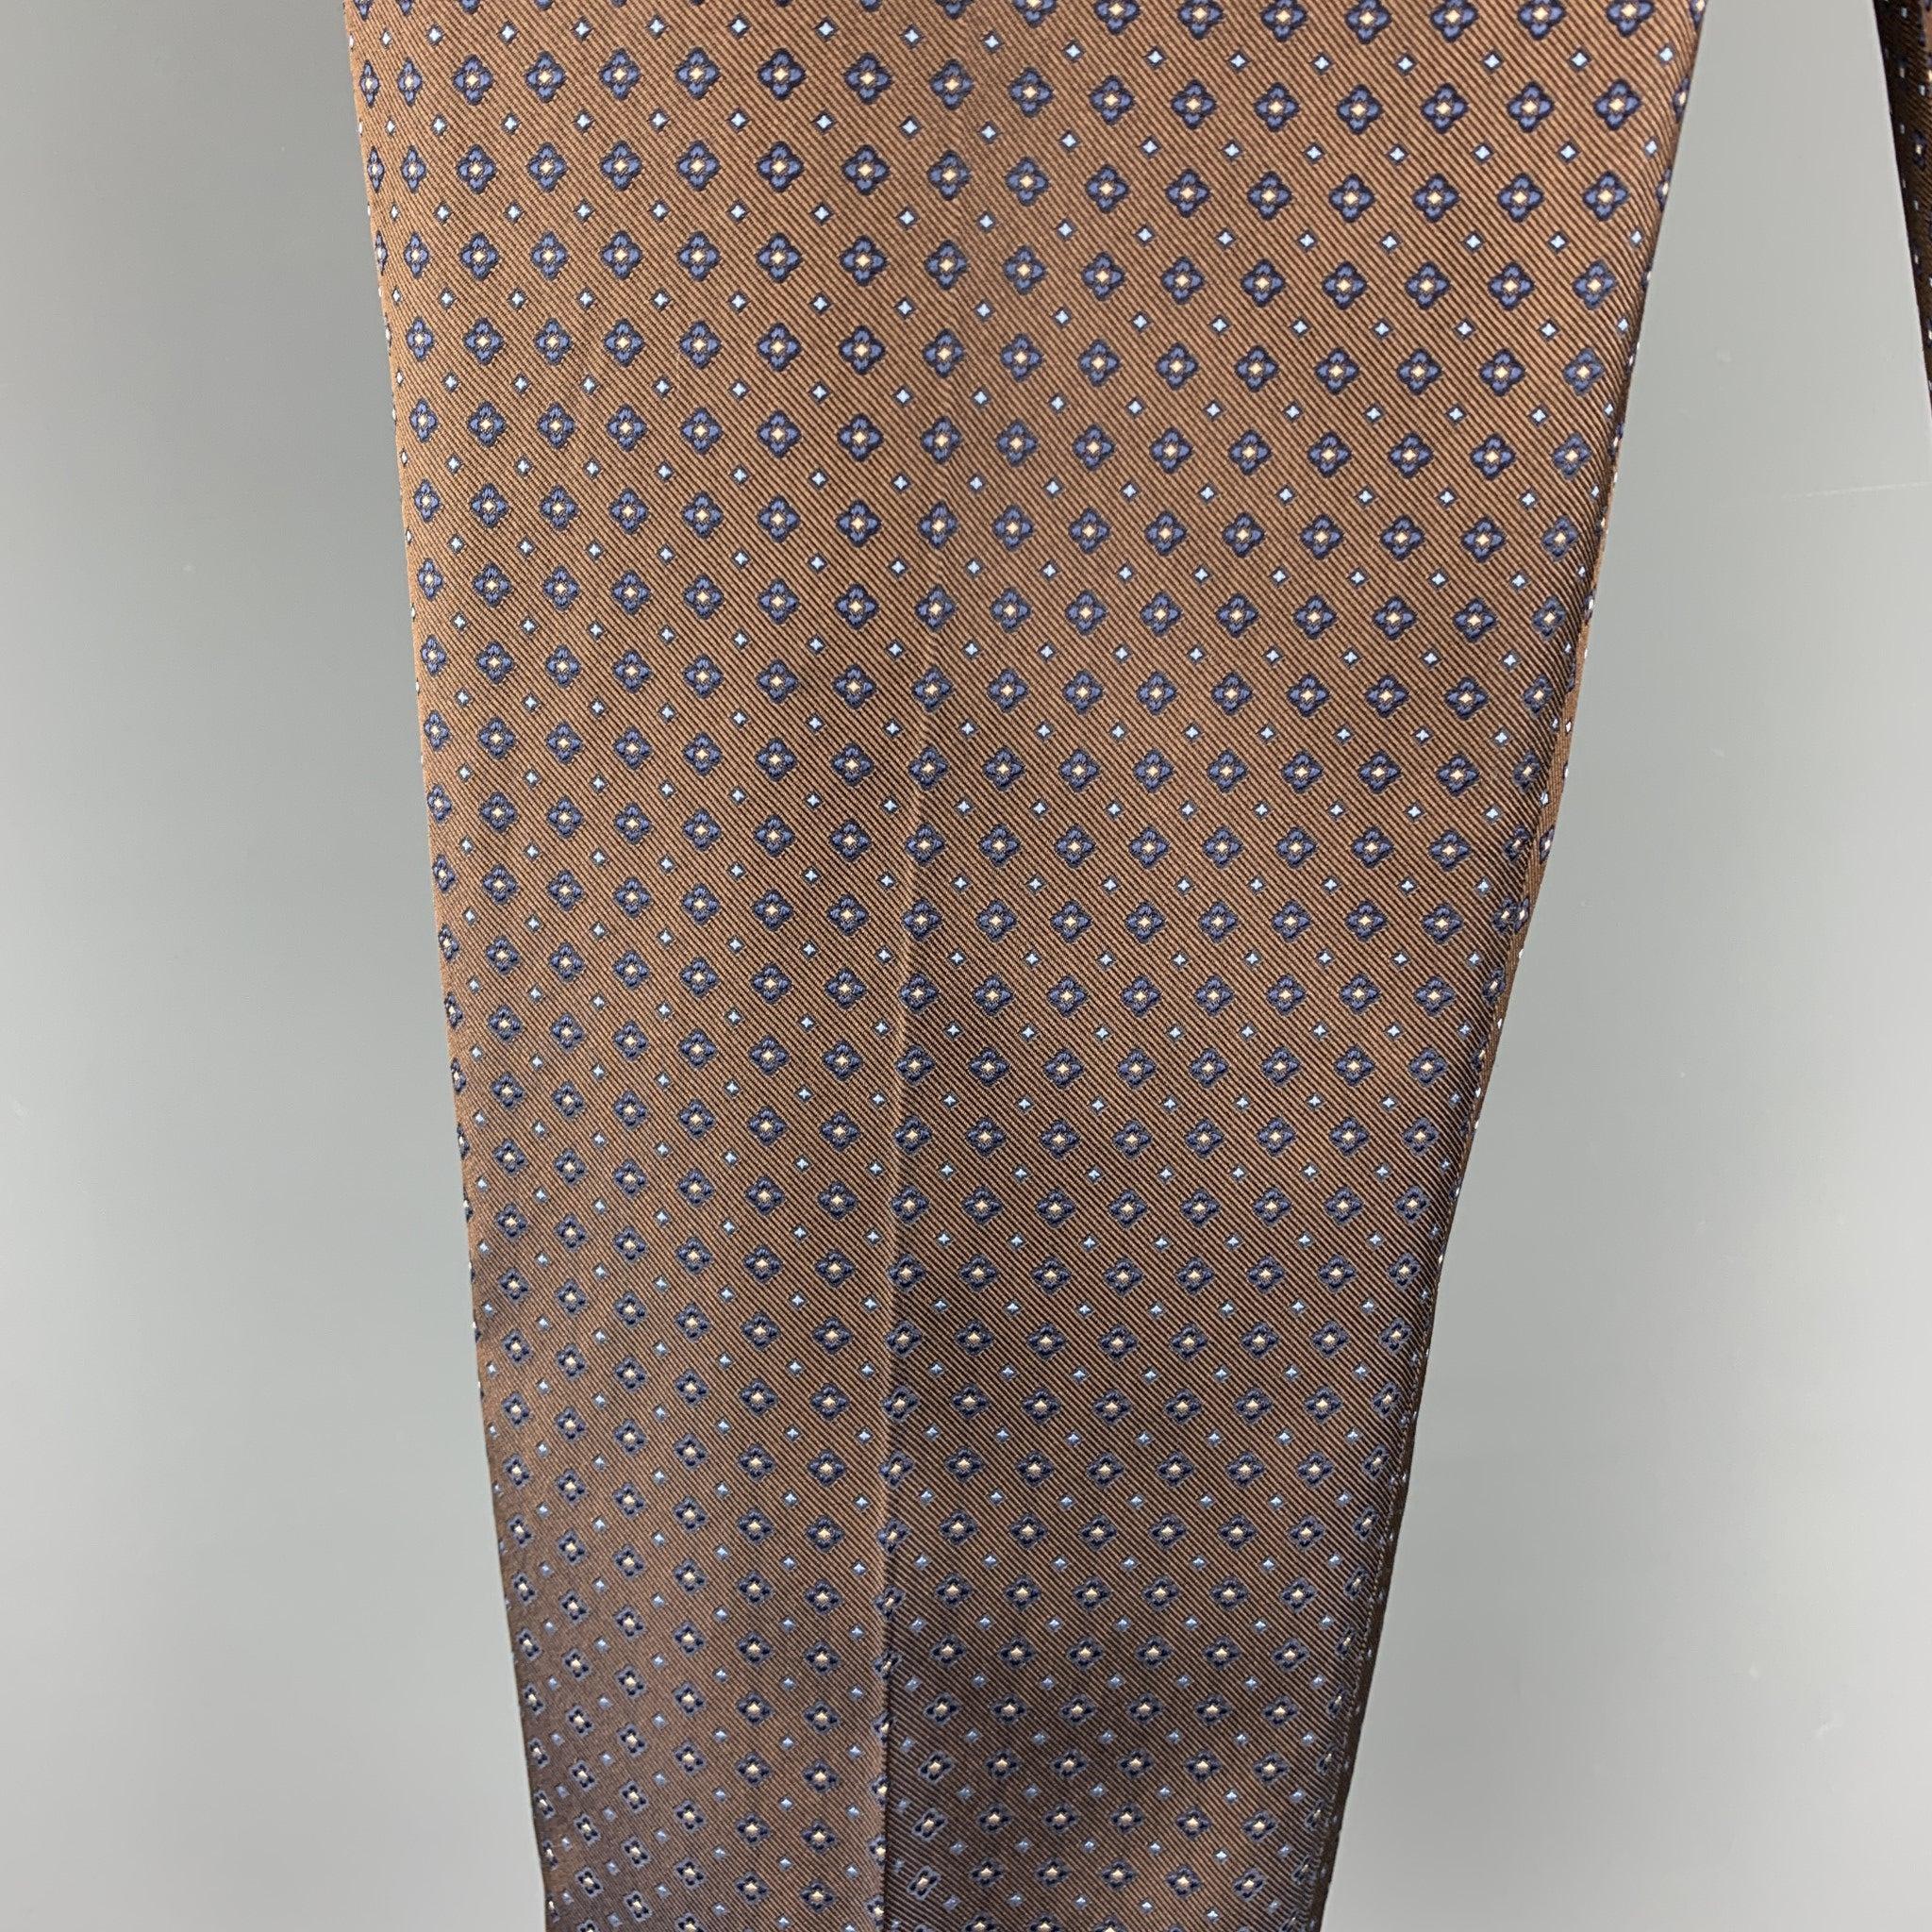 Ce pantalon habillé de DSQUARED2 est réalisé en soie jacquard marron et présente un style cropped, des jambes à revers et une fermeture zippée. Fabriqué en Italie.
Etat d'occasion. 

Marqué :   IT 44 

Mesures : 
  Taille : 35 pouces 
Montée : 6